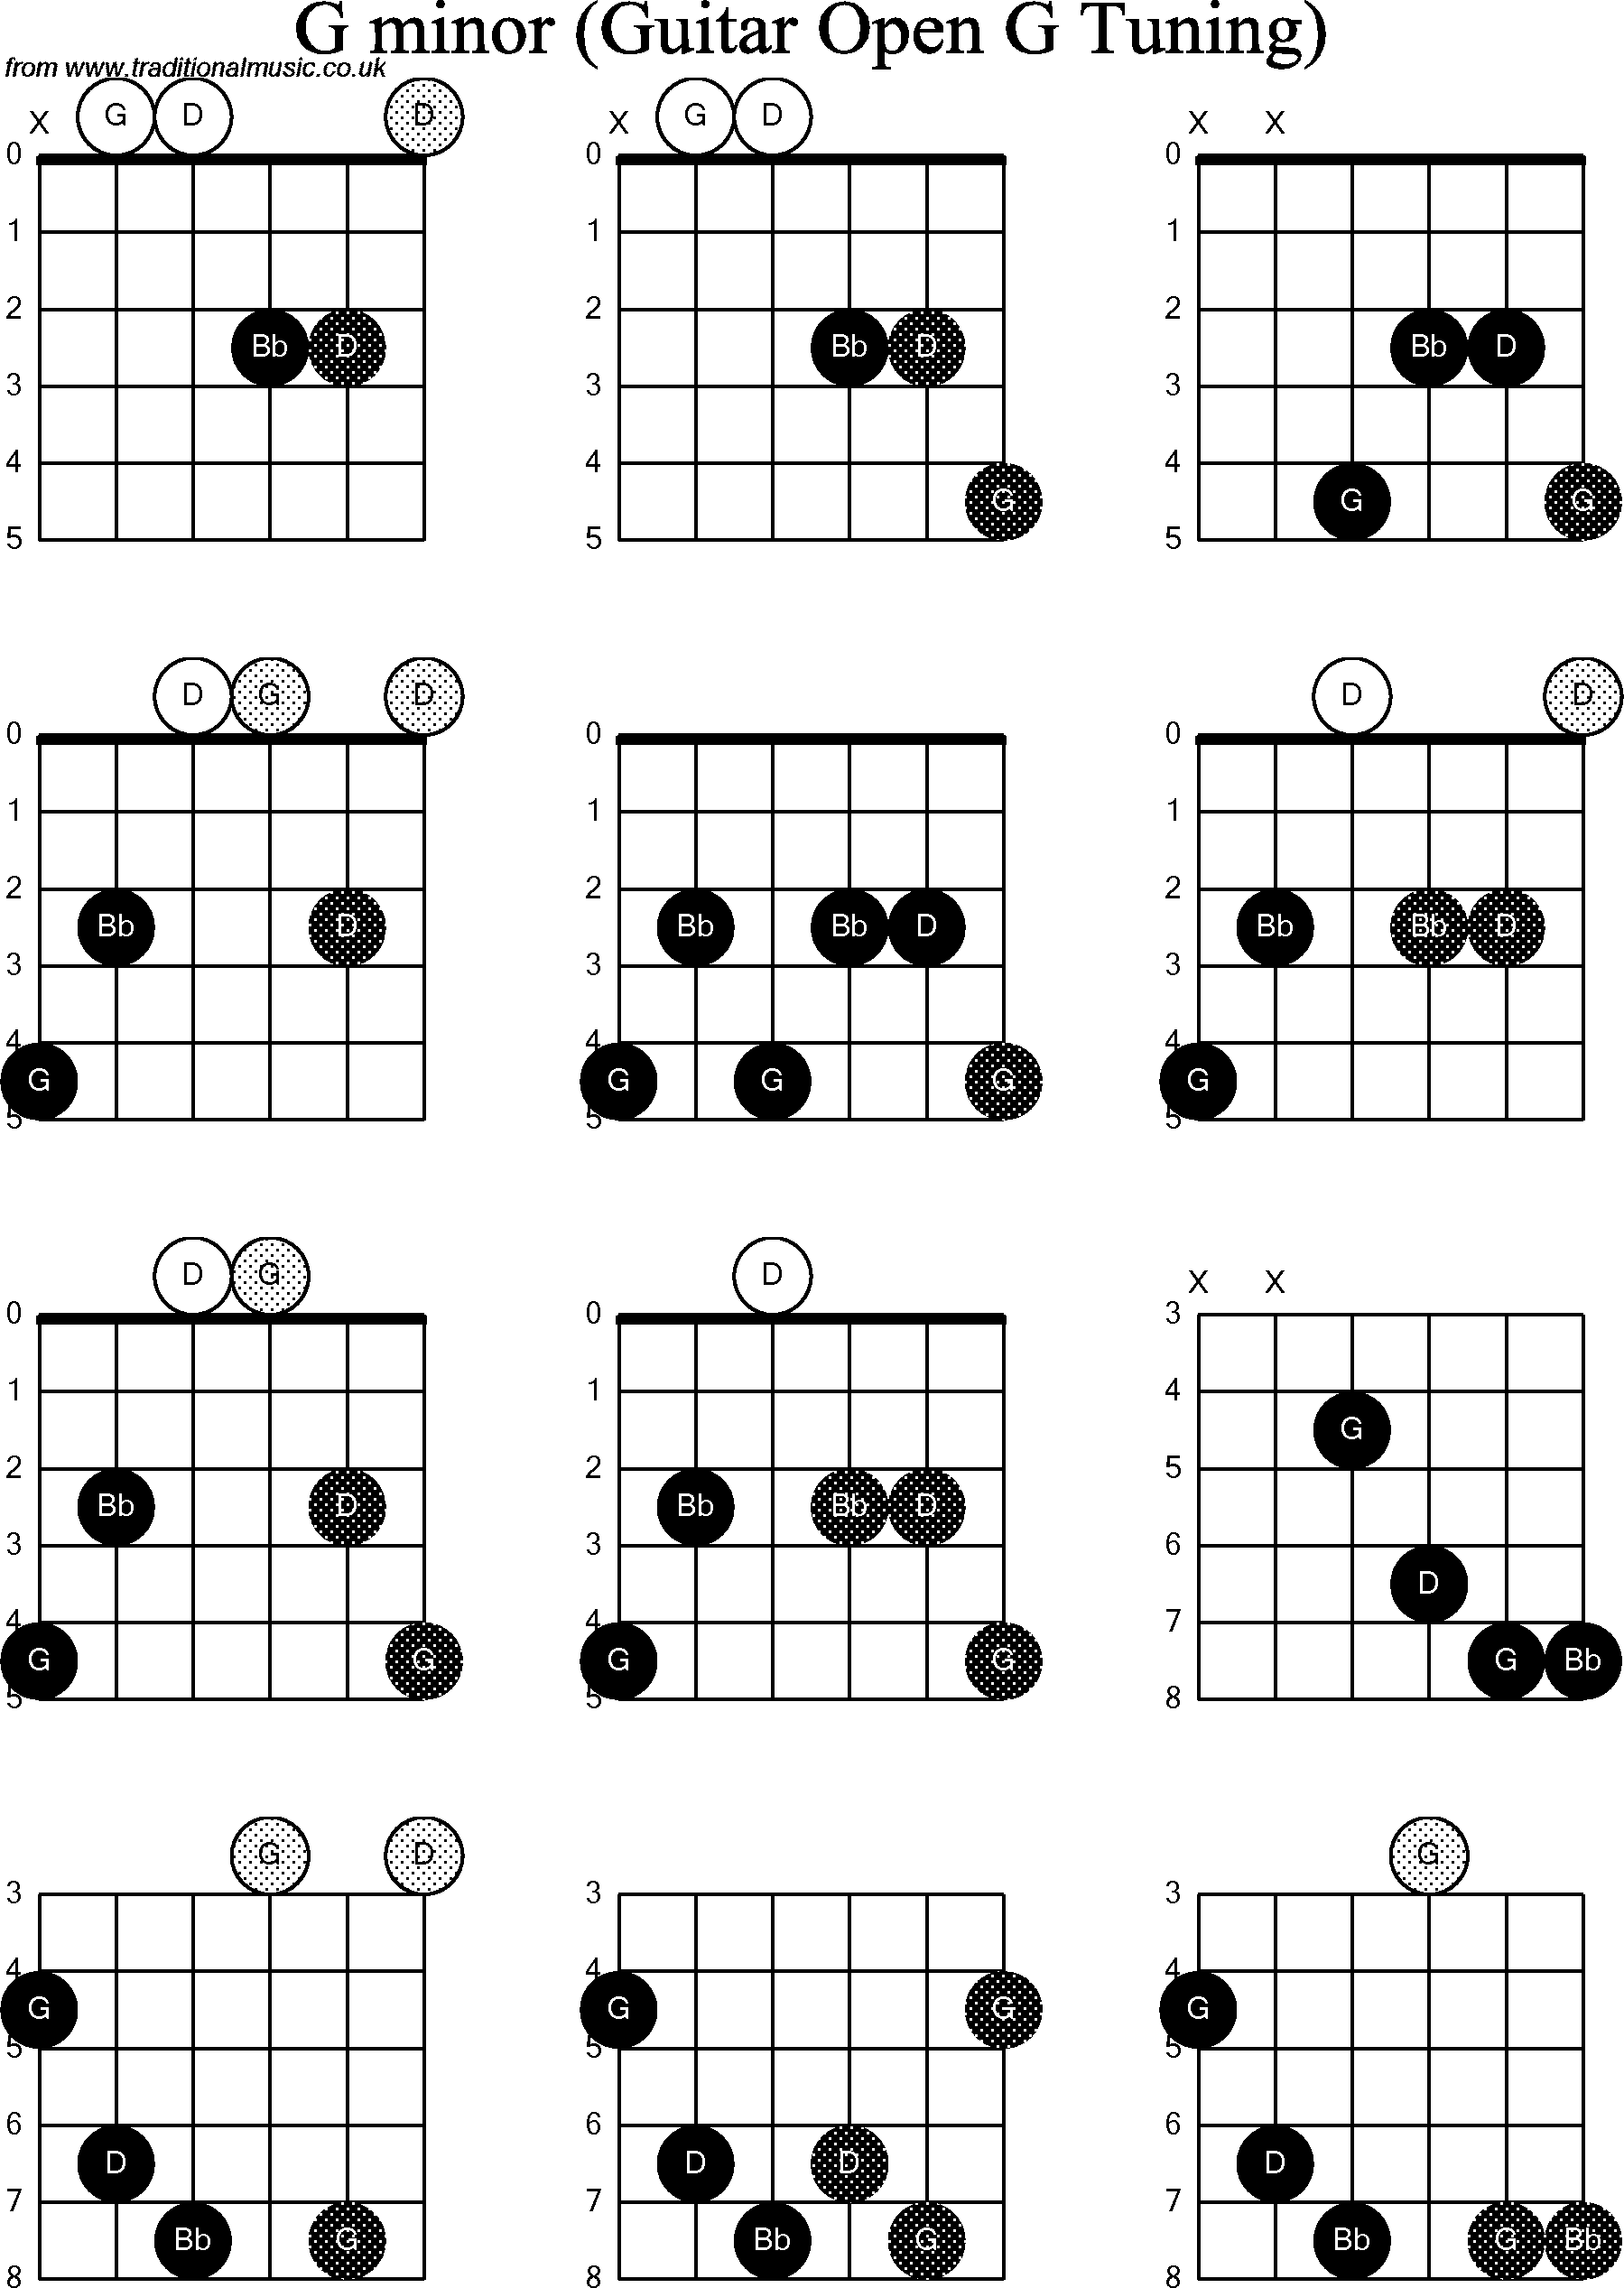 Chord diagrams for Dobro G Minor